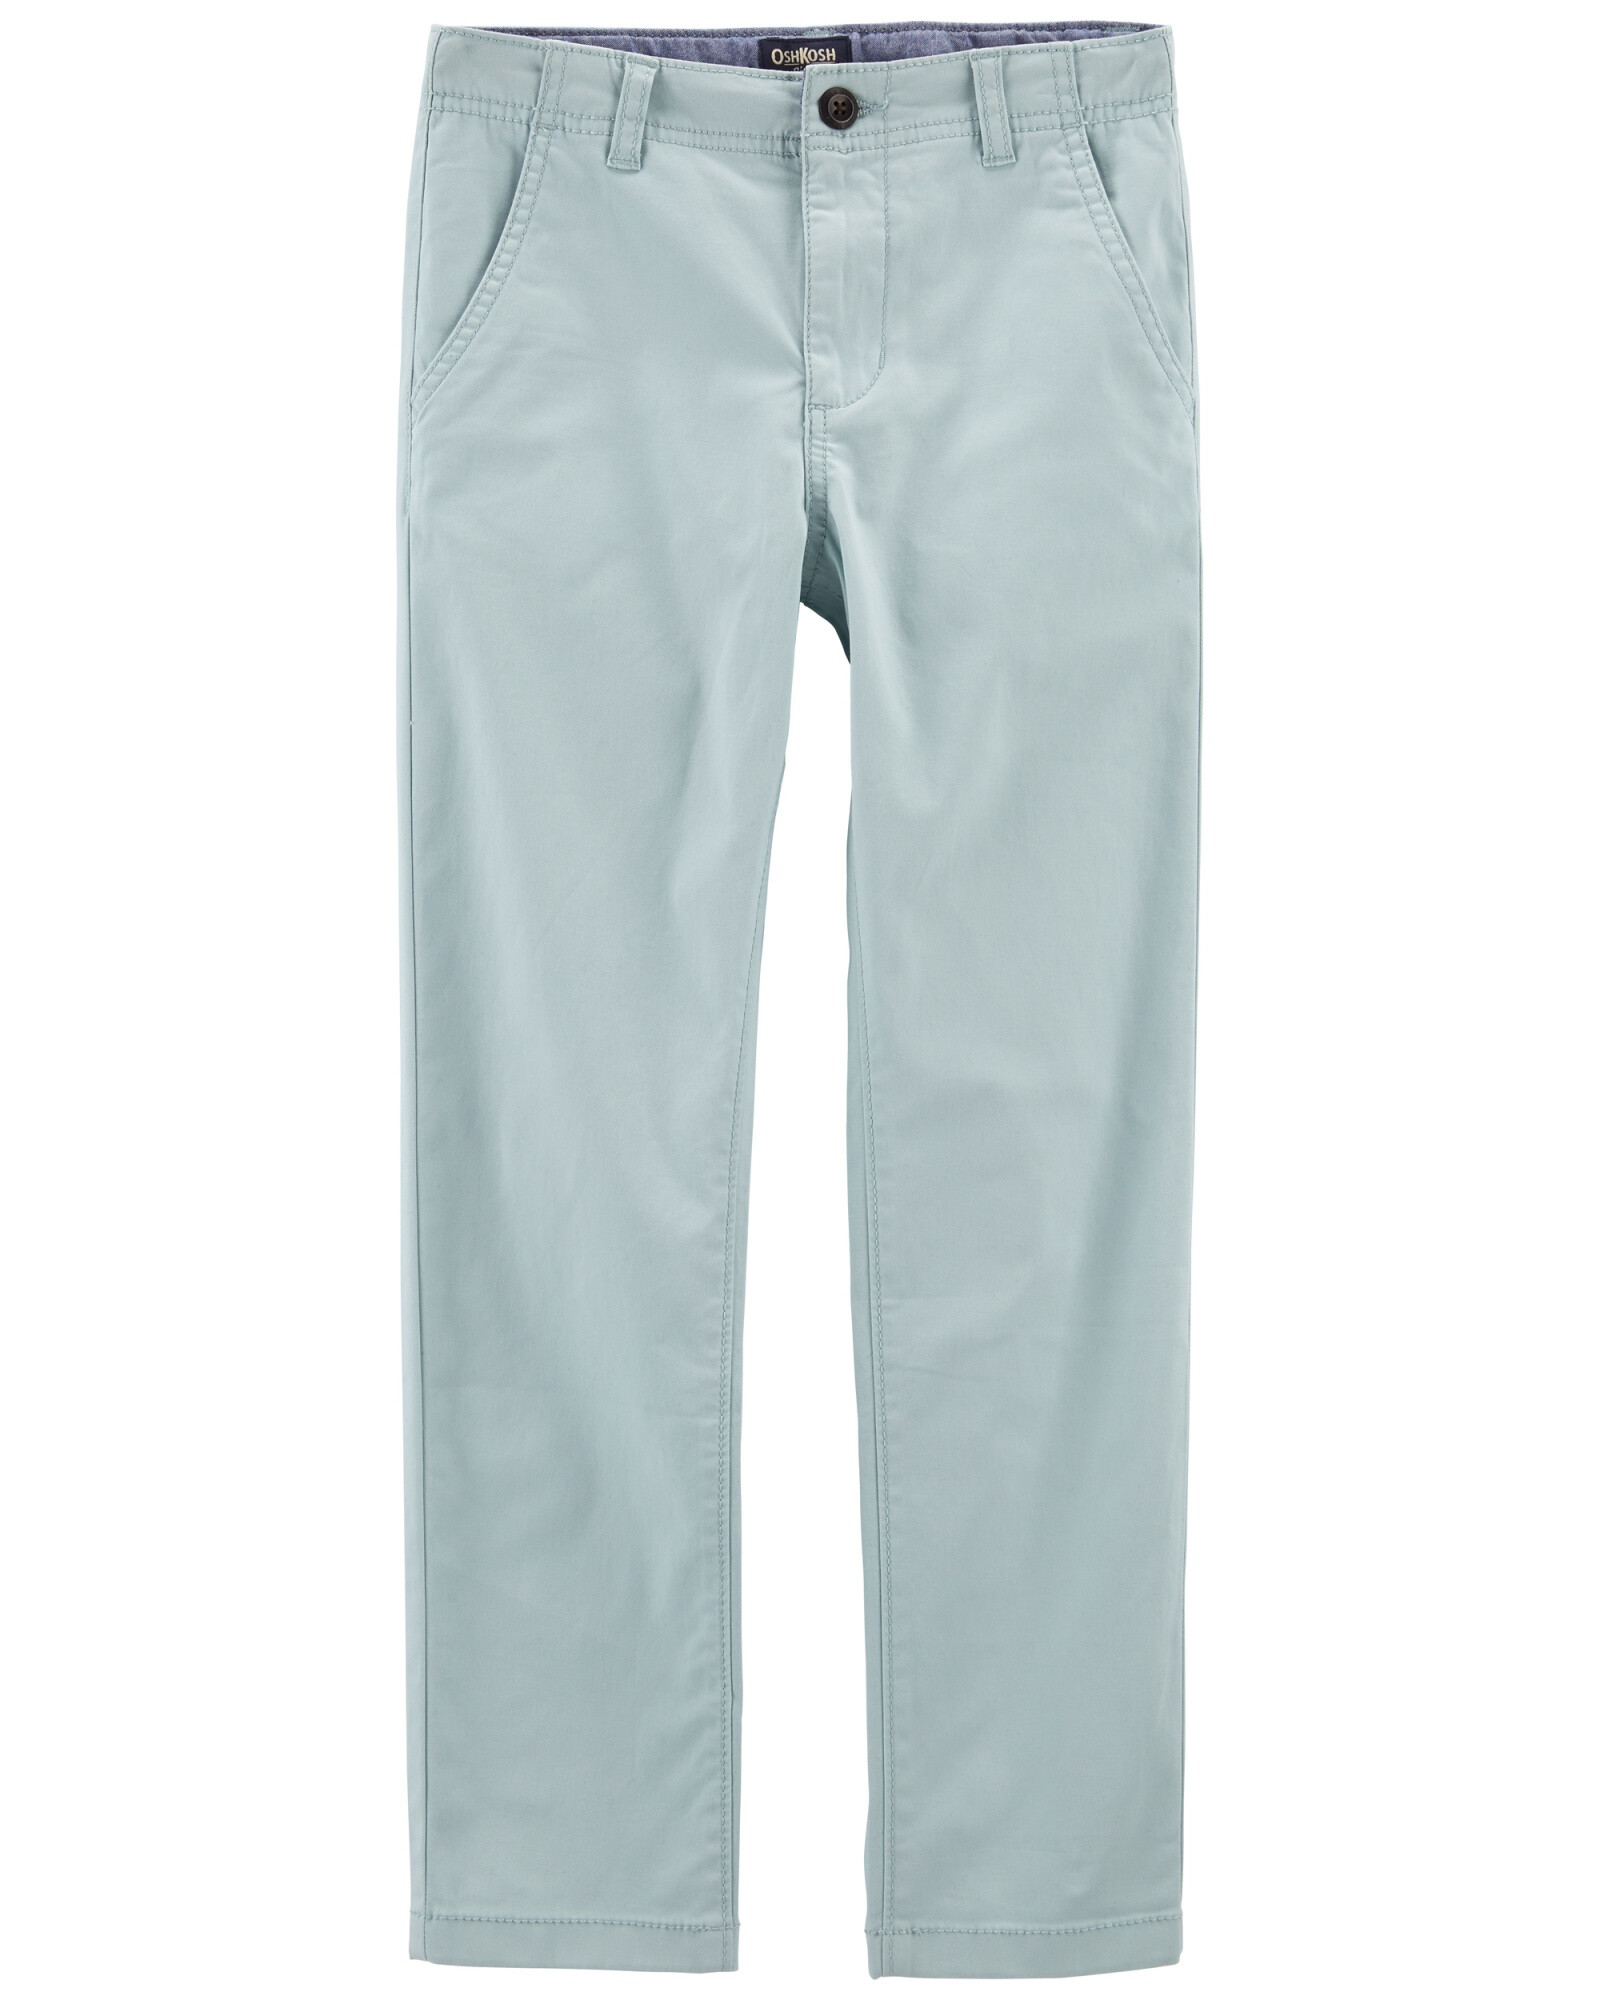 Pantalón de sarga elastizada recto. Talles 6-14 Sin color